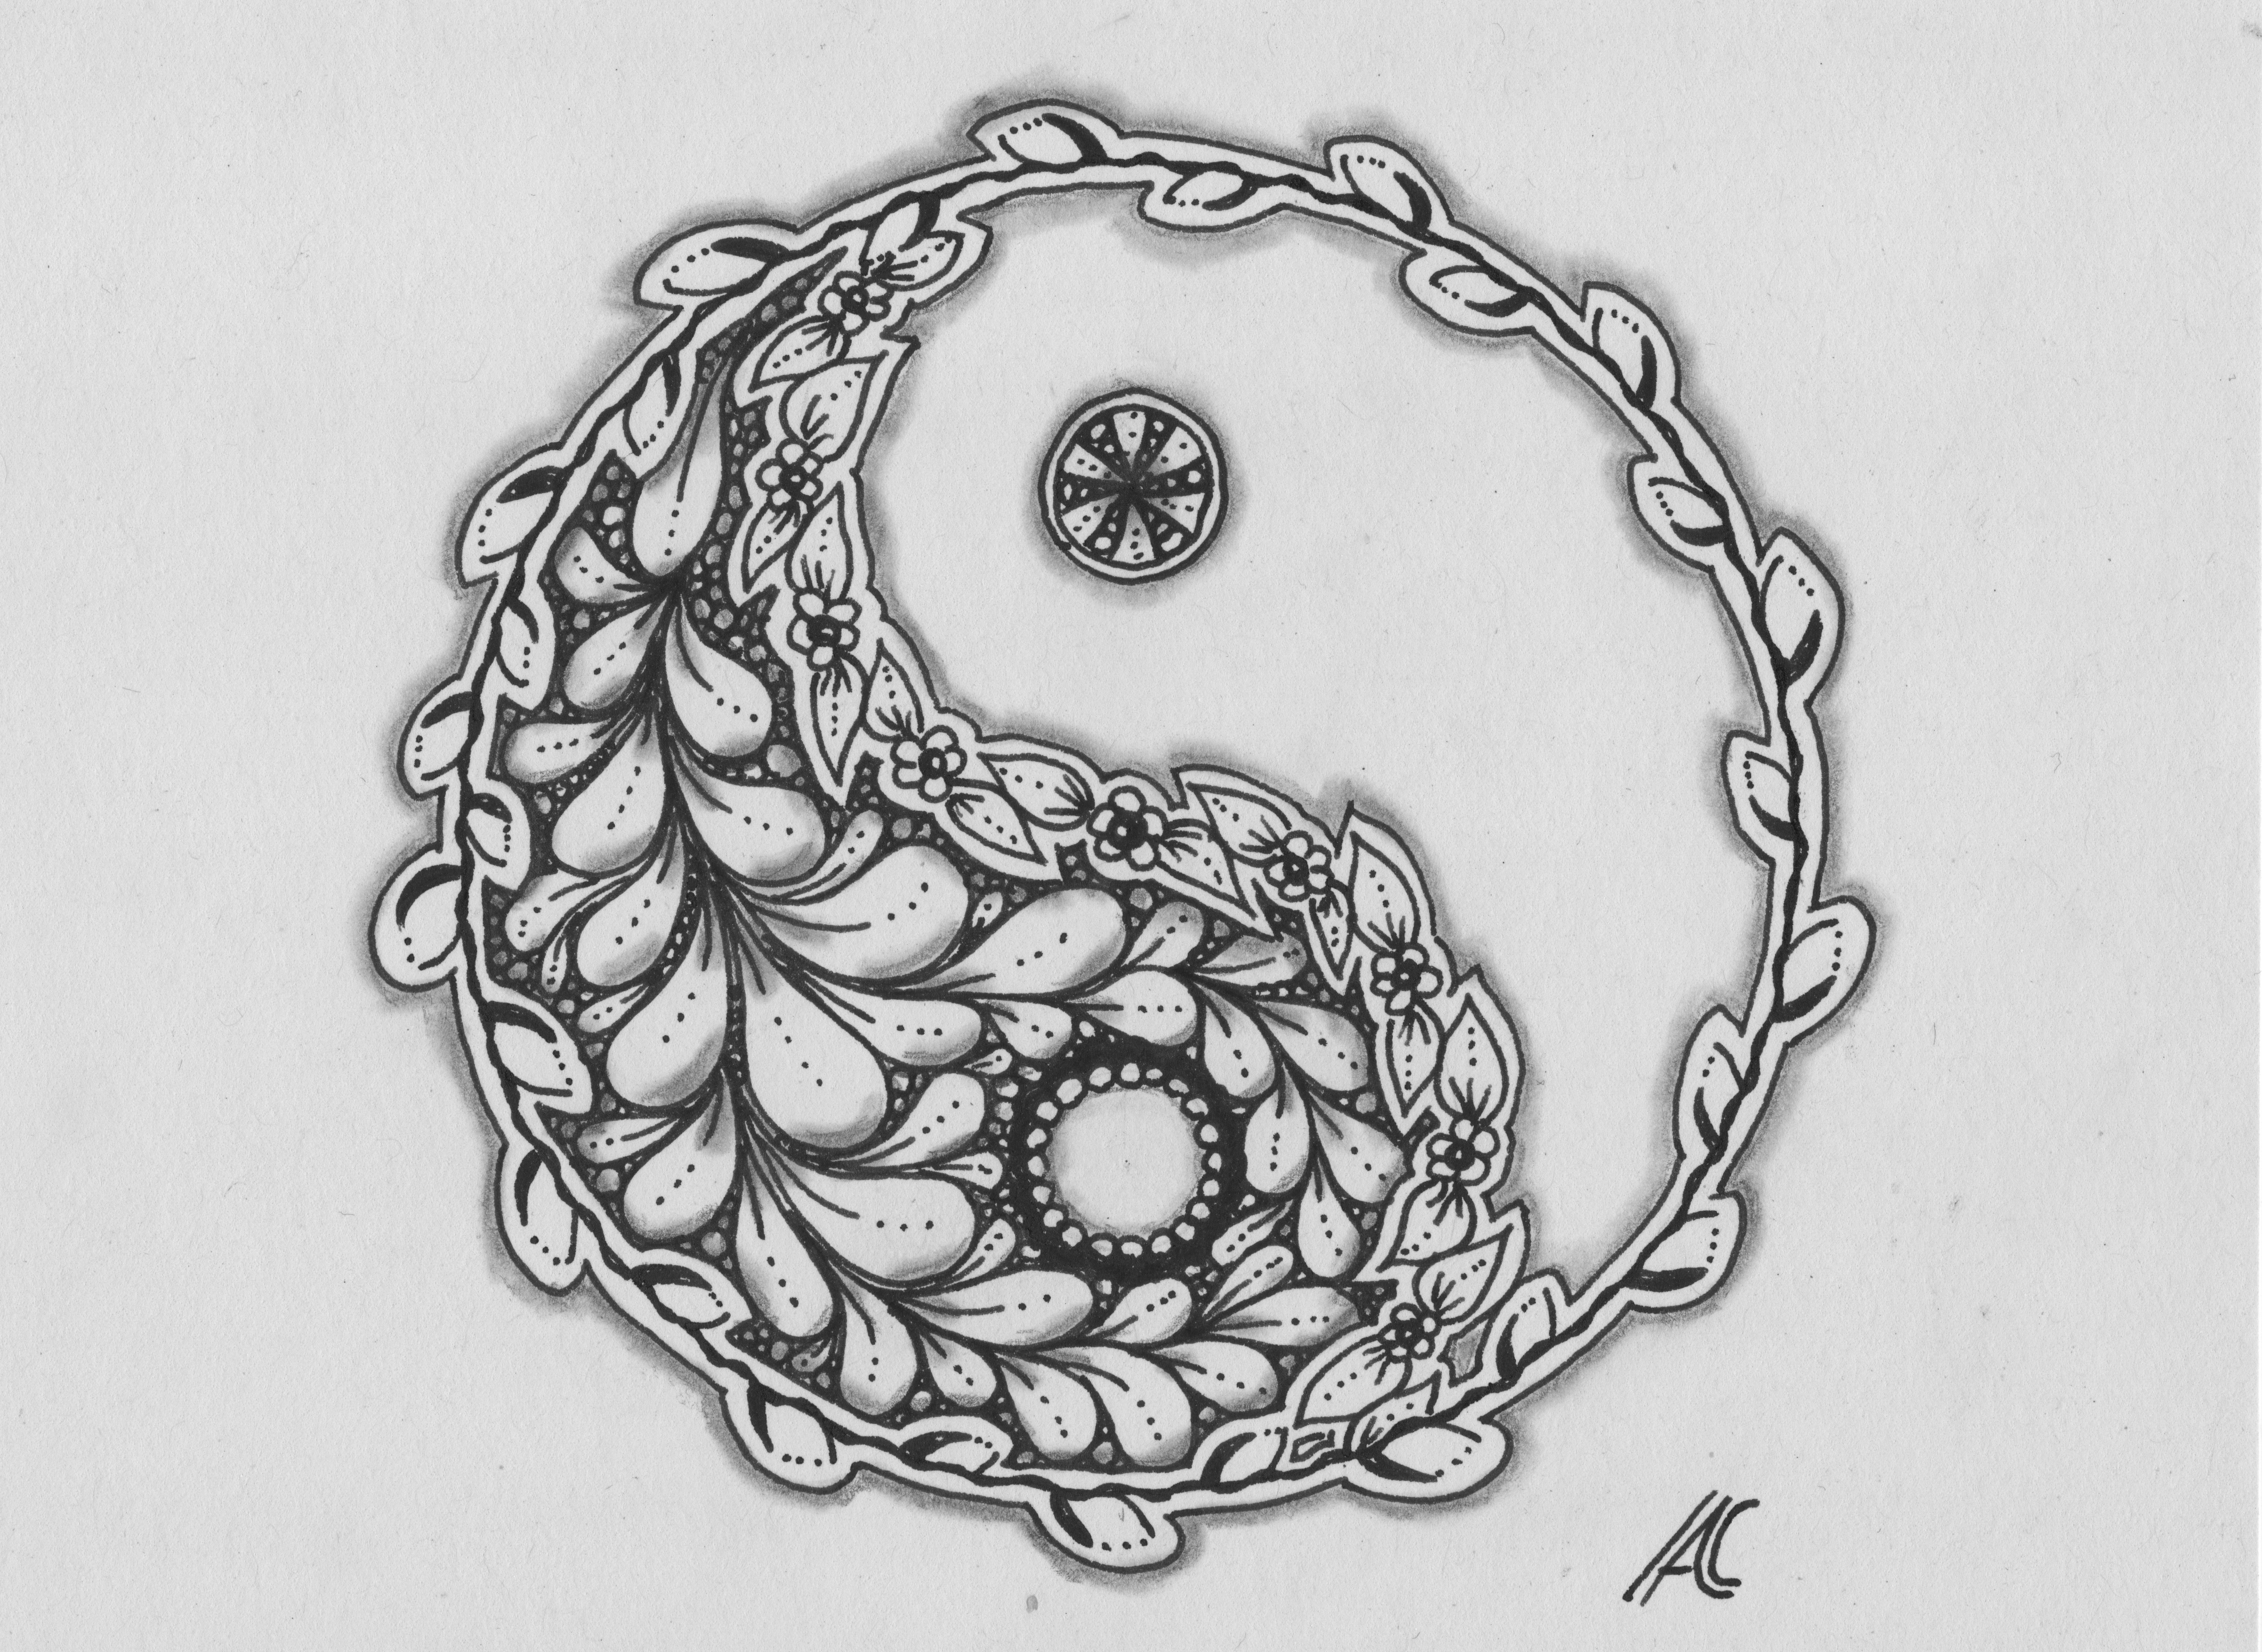 Frühlingsanfang: schwearz weiße zeichnung eines Kreises in Yin und Yang Form, die dunkle Hälfte ist mit Blättern ausgefüllt, die äußere Kreislinie besteht aus einem runden Weidenkätzchenzweig